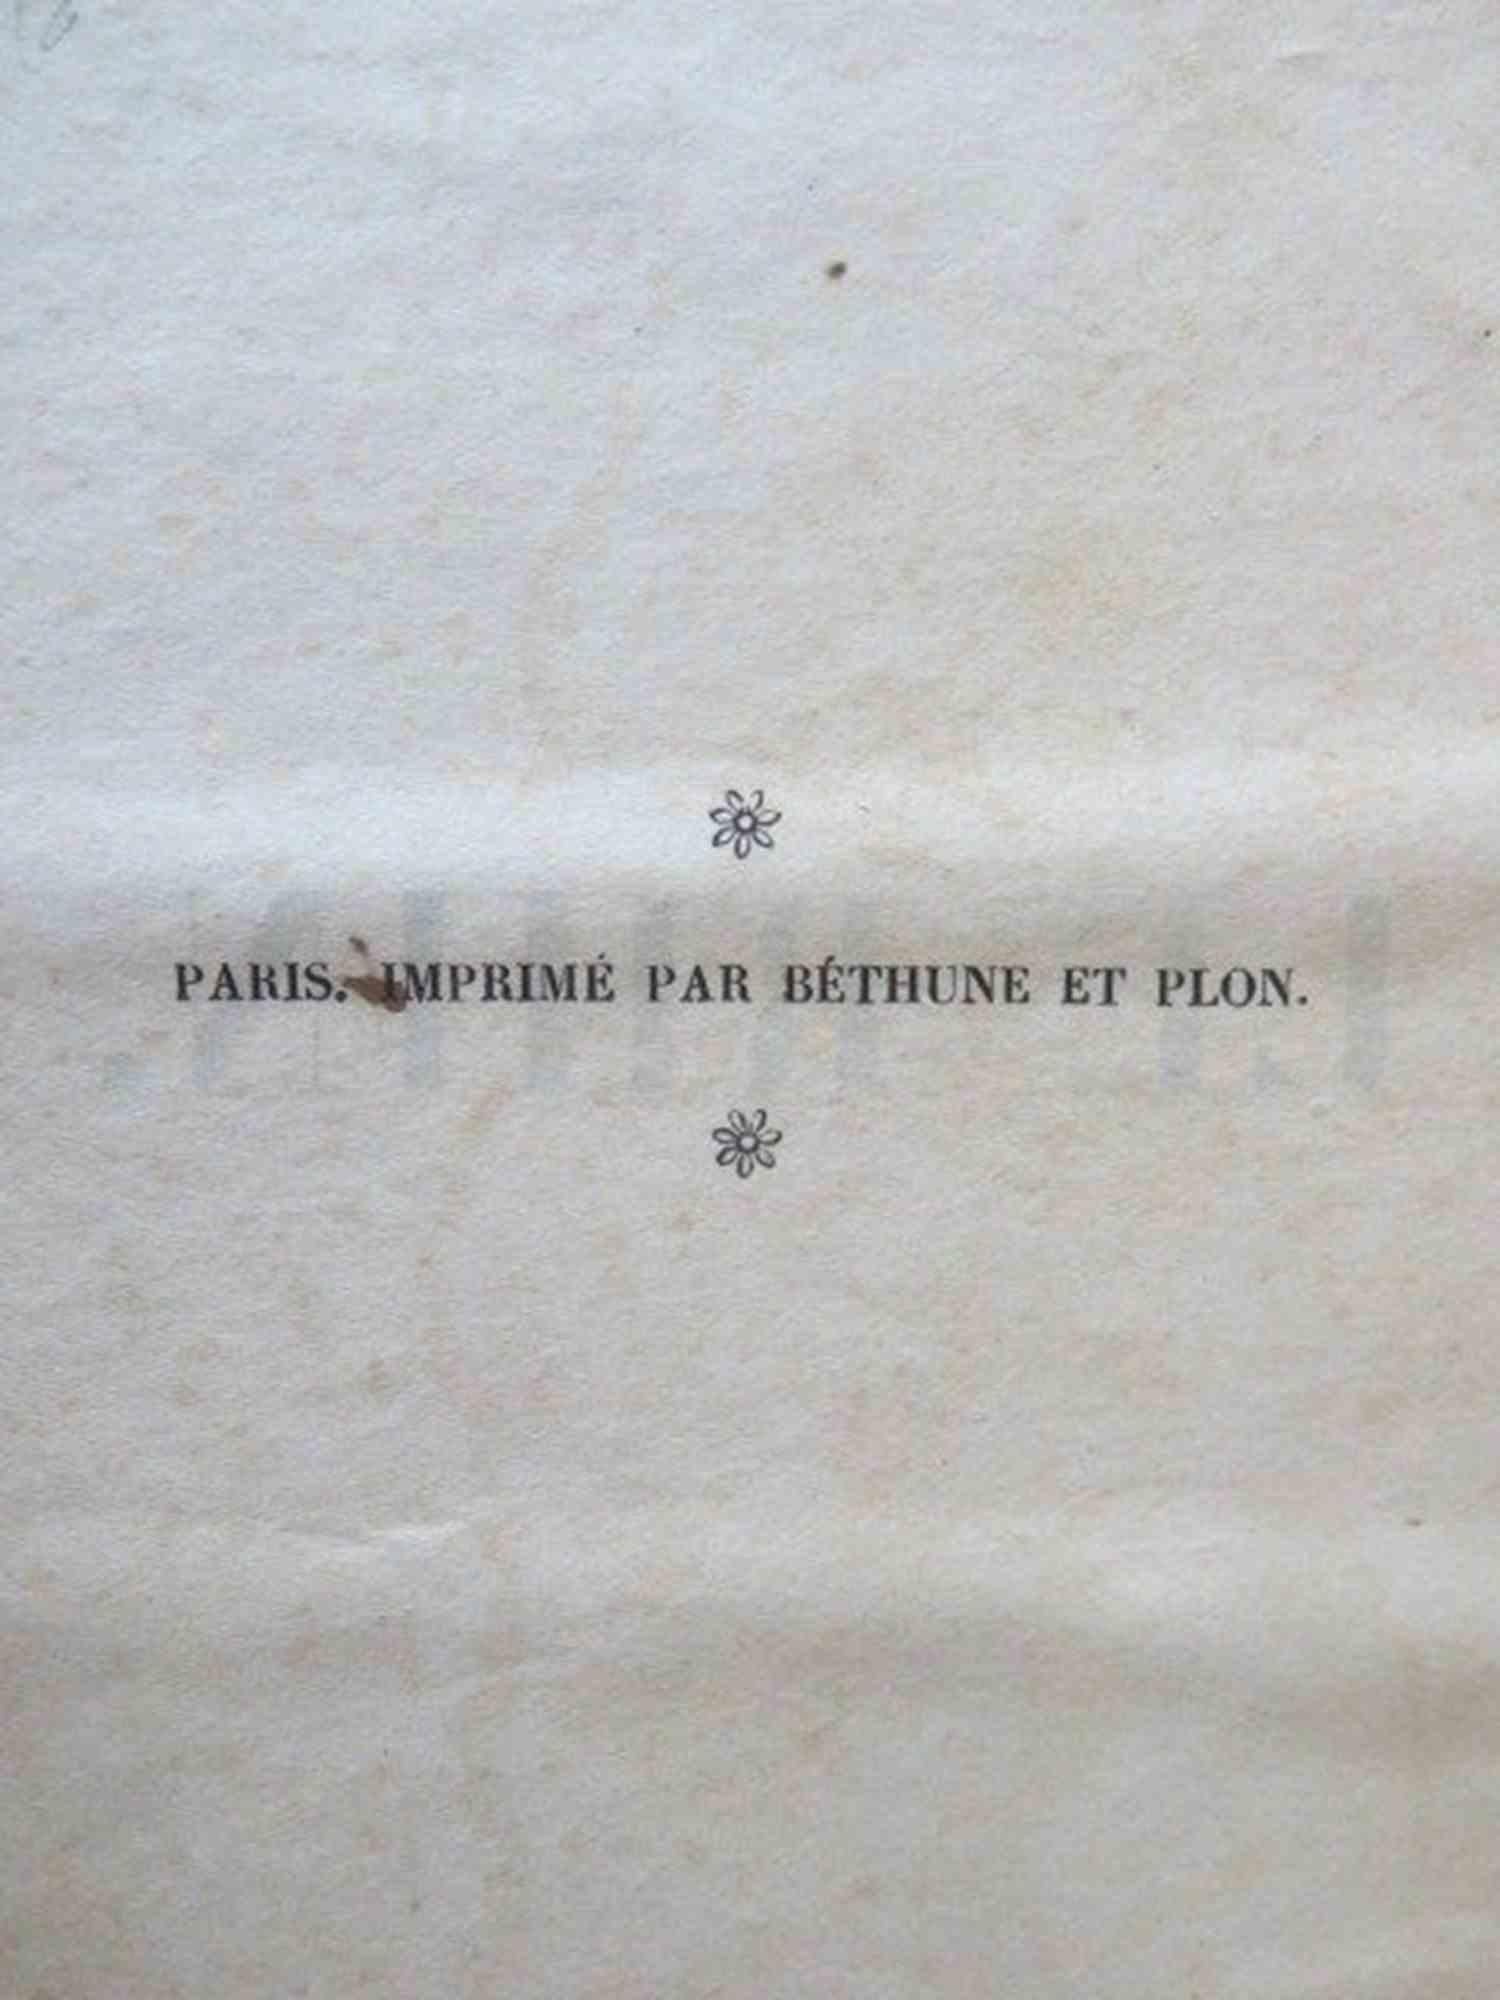 Le Rhin. Lettres à un Ami - Rare Book by Victor Hugo - 1842 For Sale 2